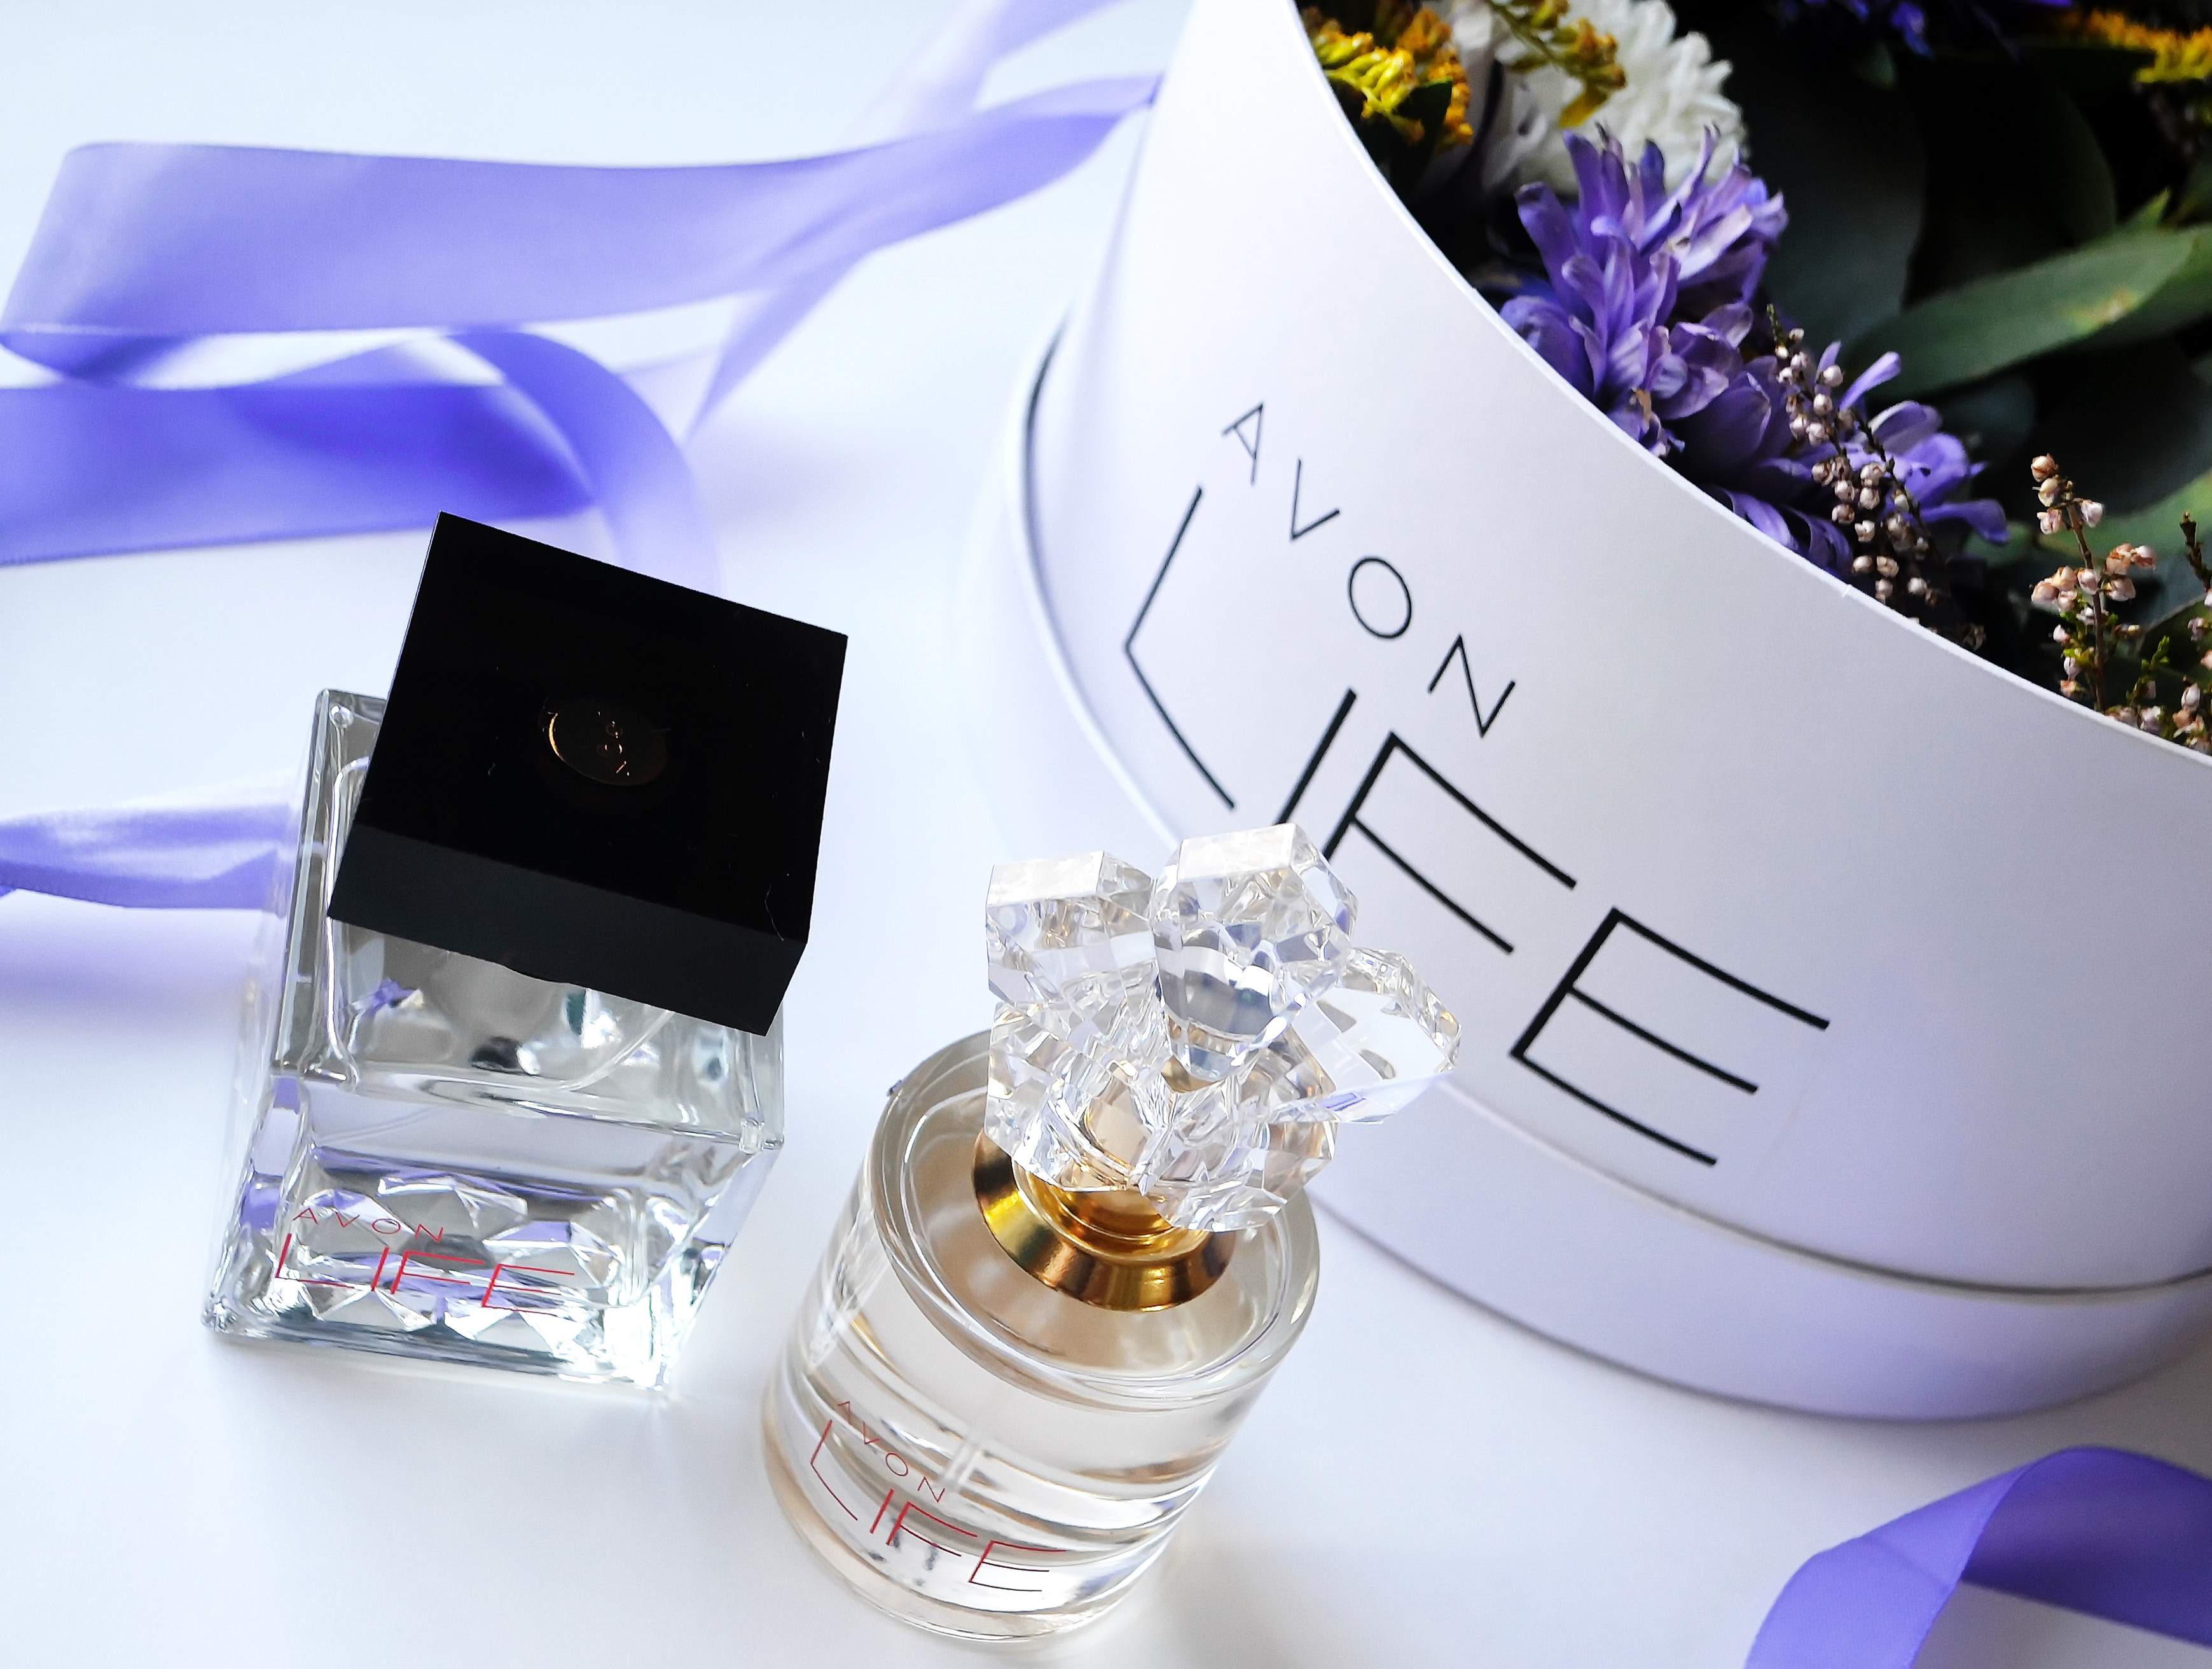 Эксклюзивные ароматы Avon Life от Кензо Такадазо Такада